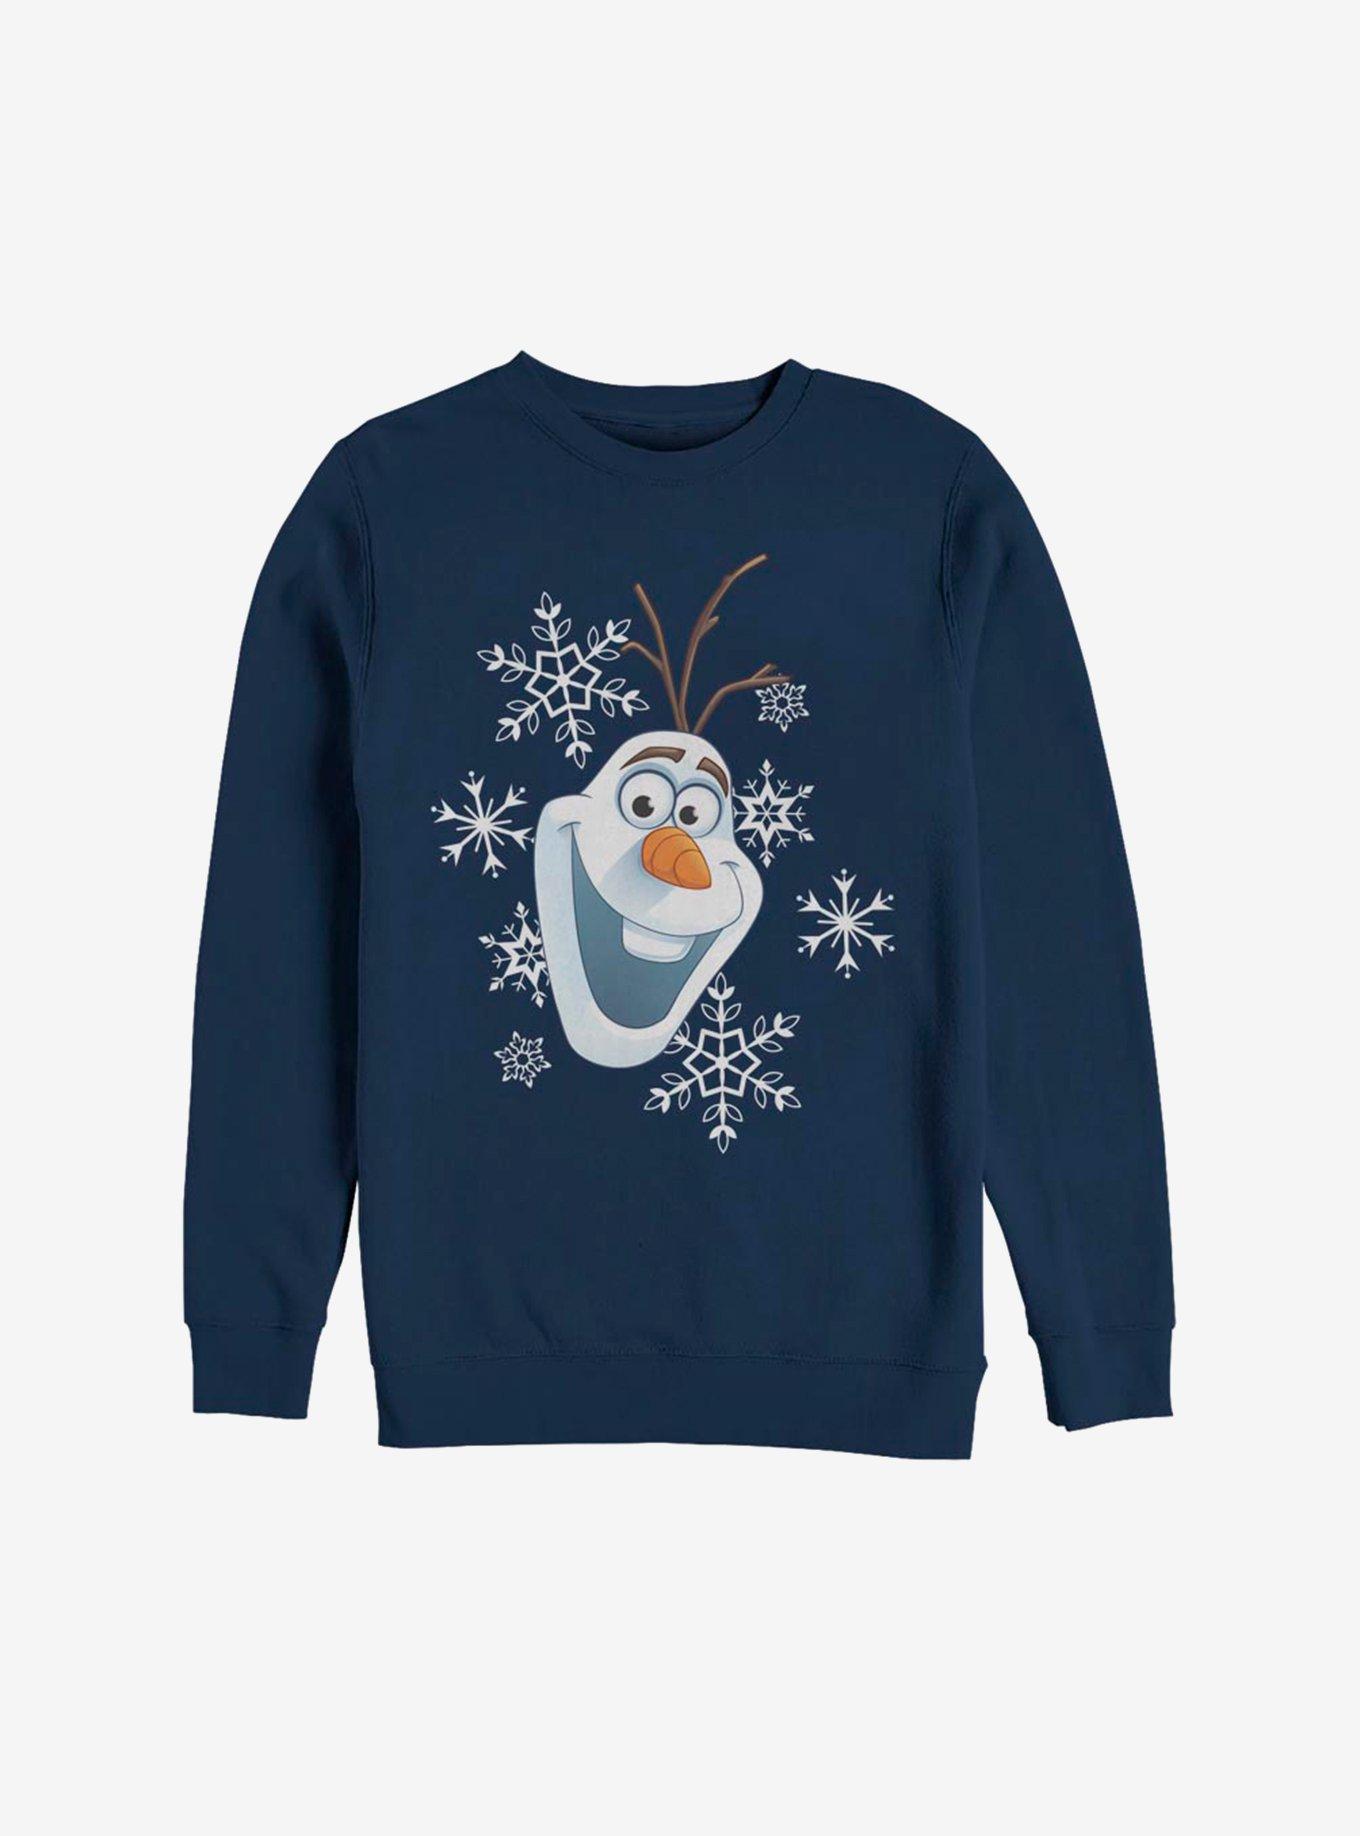 Disney Frozen Olaf Greetings Sweatshirt, NAVY, hi-res